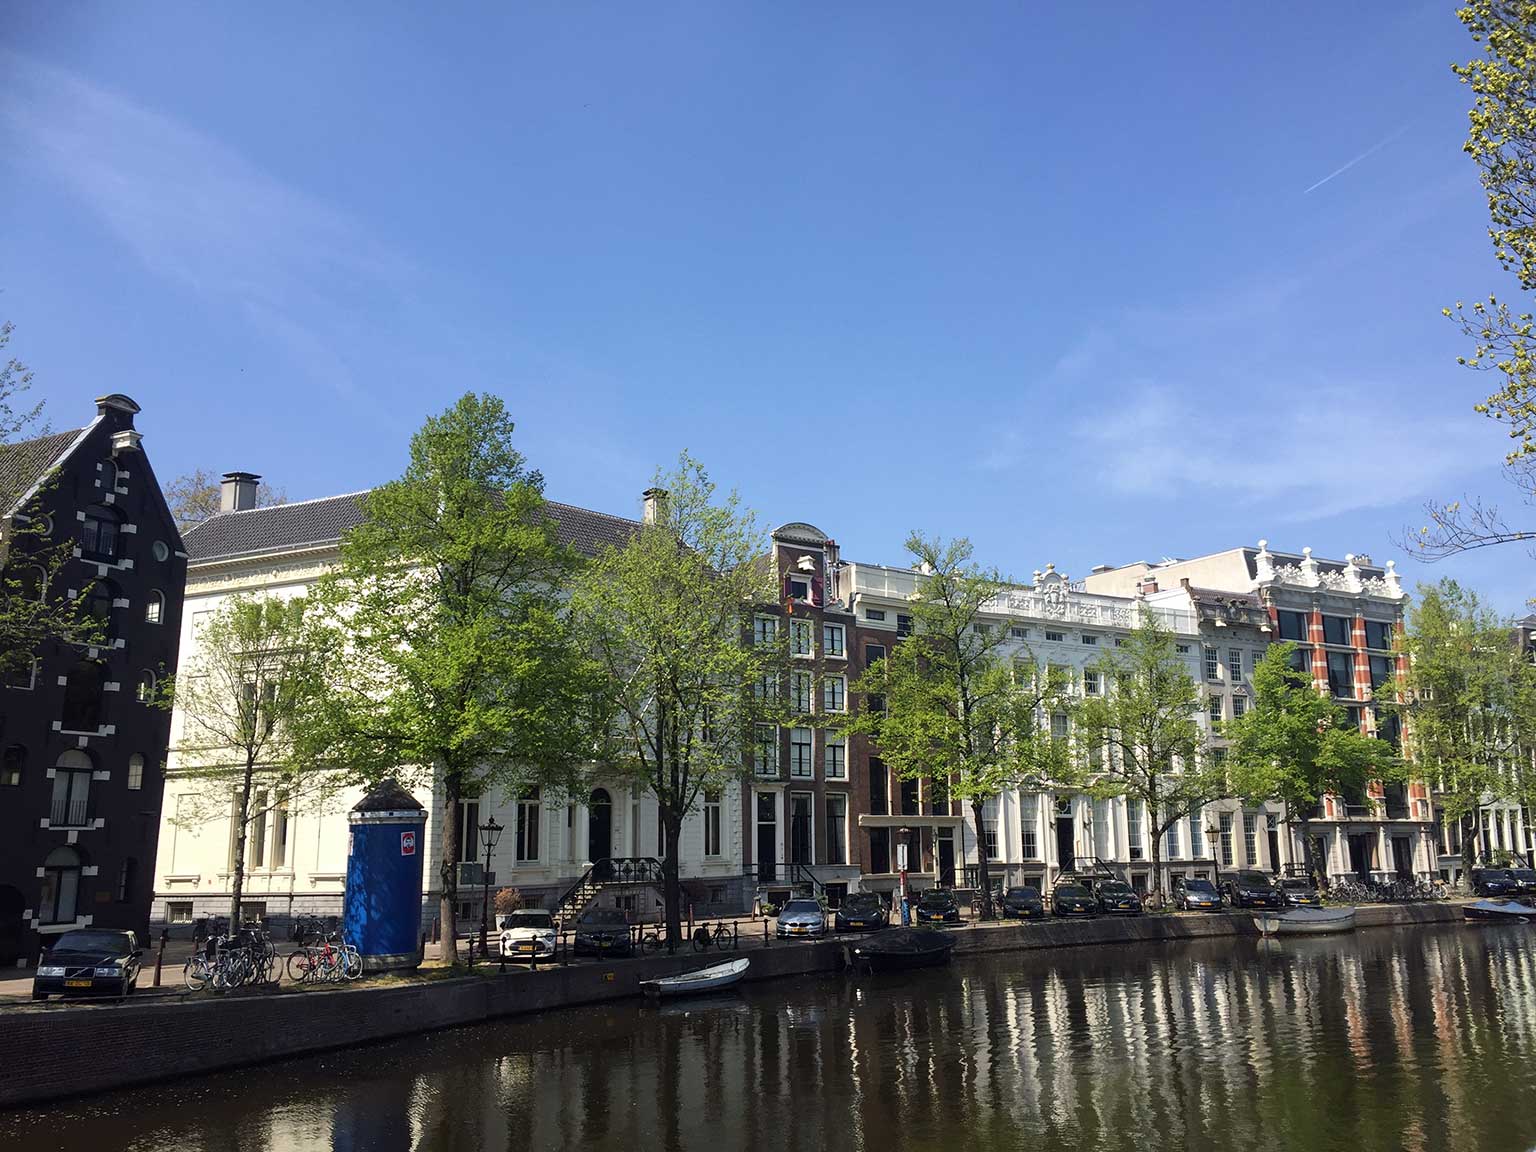 Kijkje langs de Keizersgracht, Amsterdam, de vroegere Hope Bank op nummer 444-446